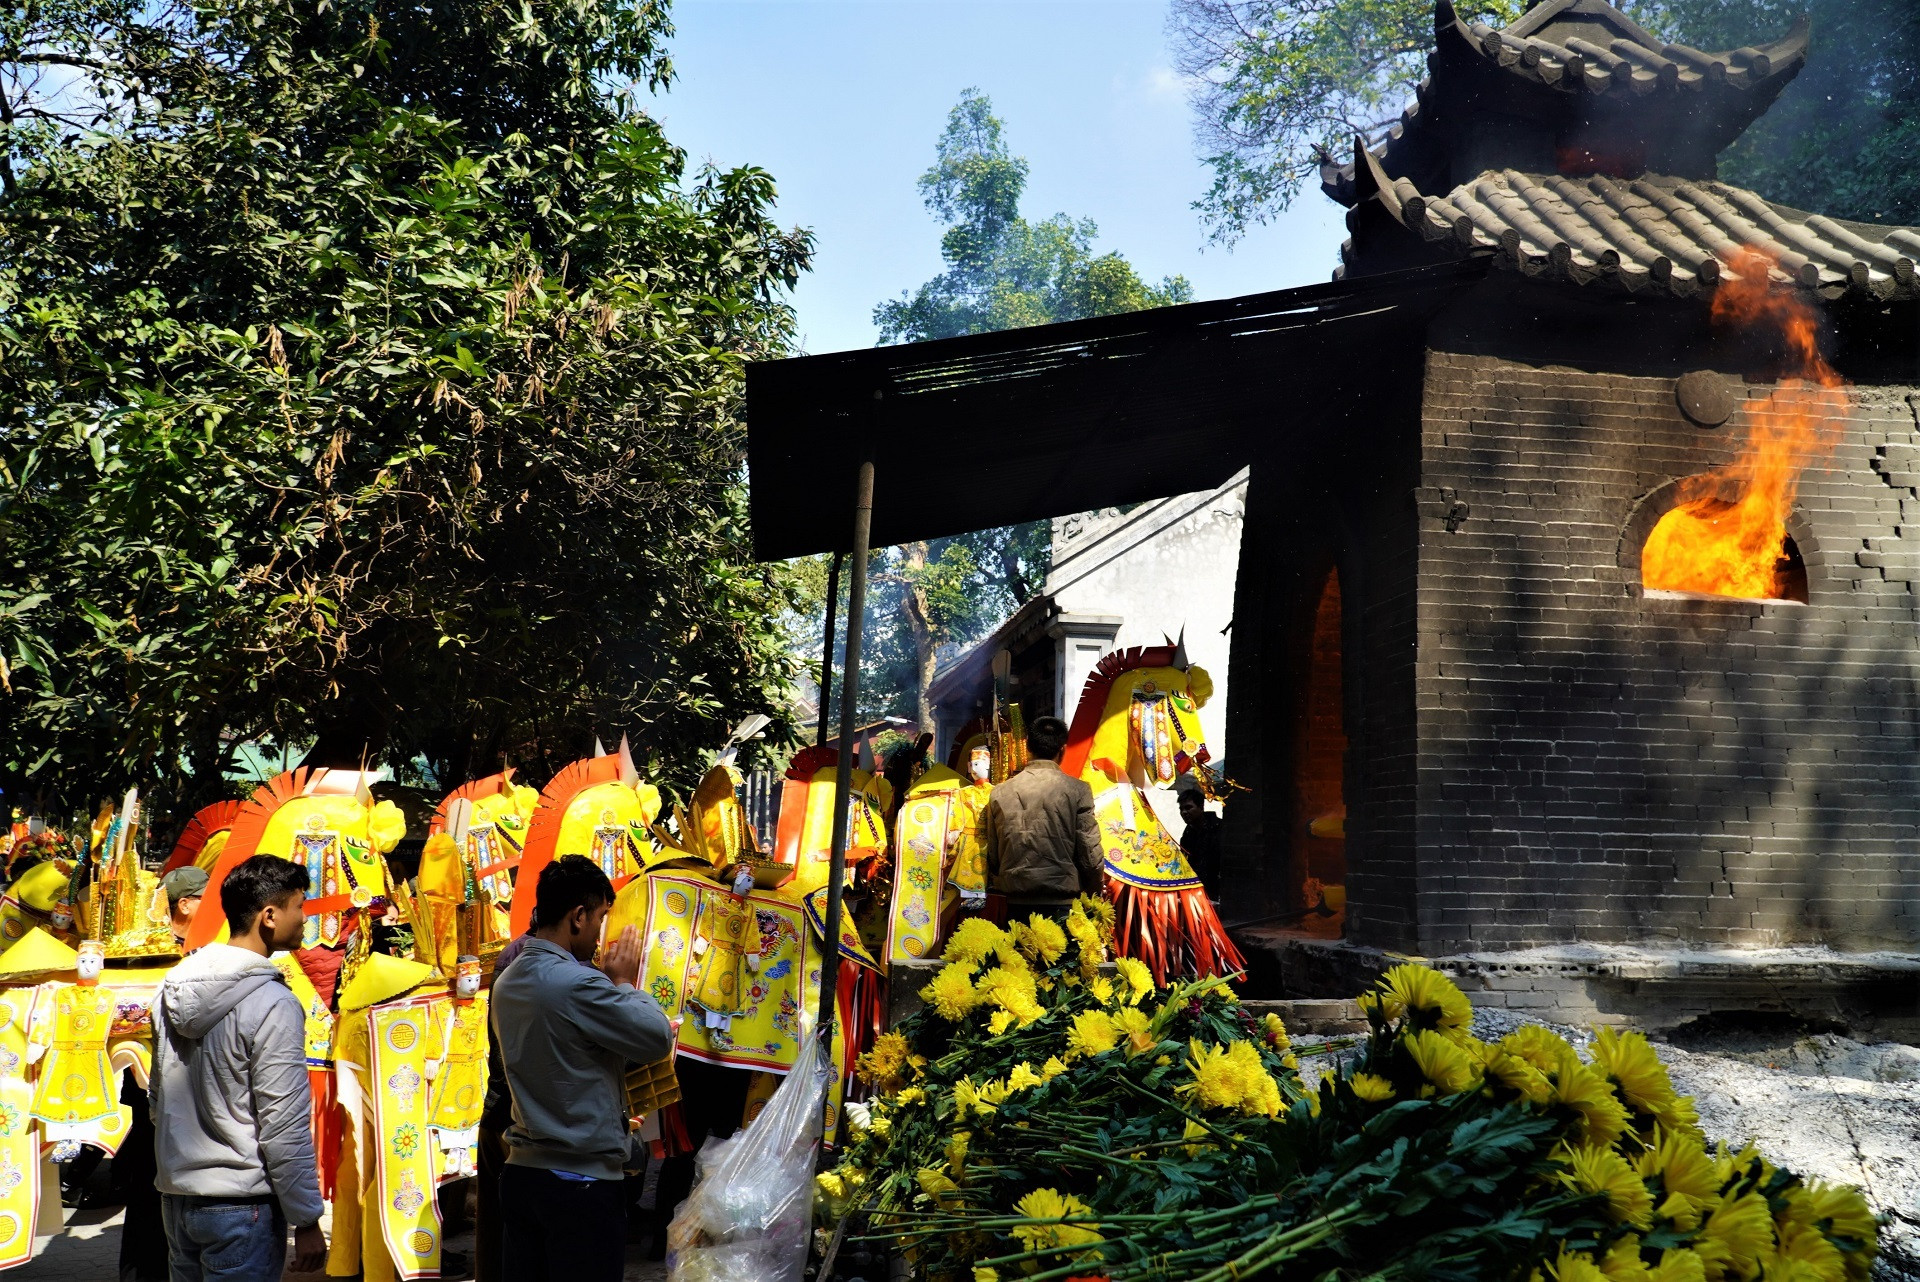 Đua nhau đốt ngựa giấy khủng xin lộc tại ngôi đền nổi tiếng linh thiêng - 6